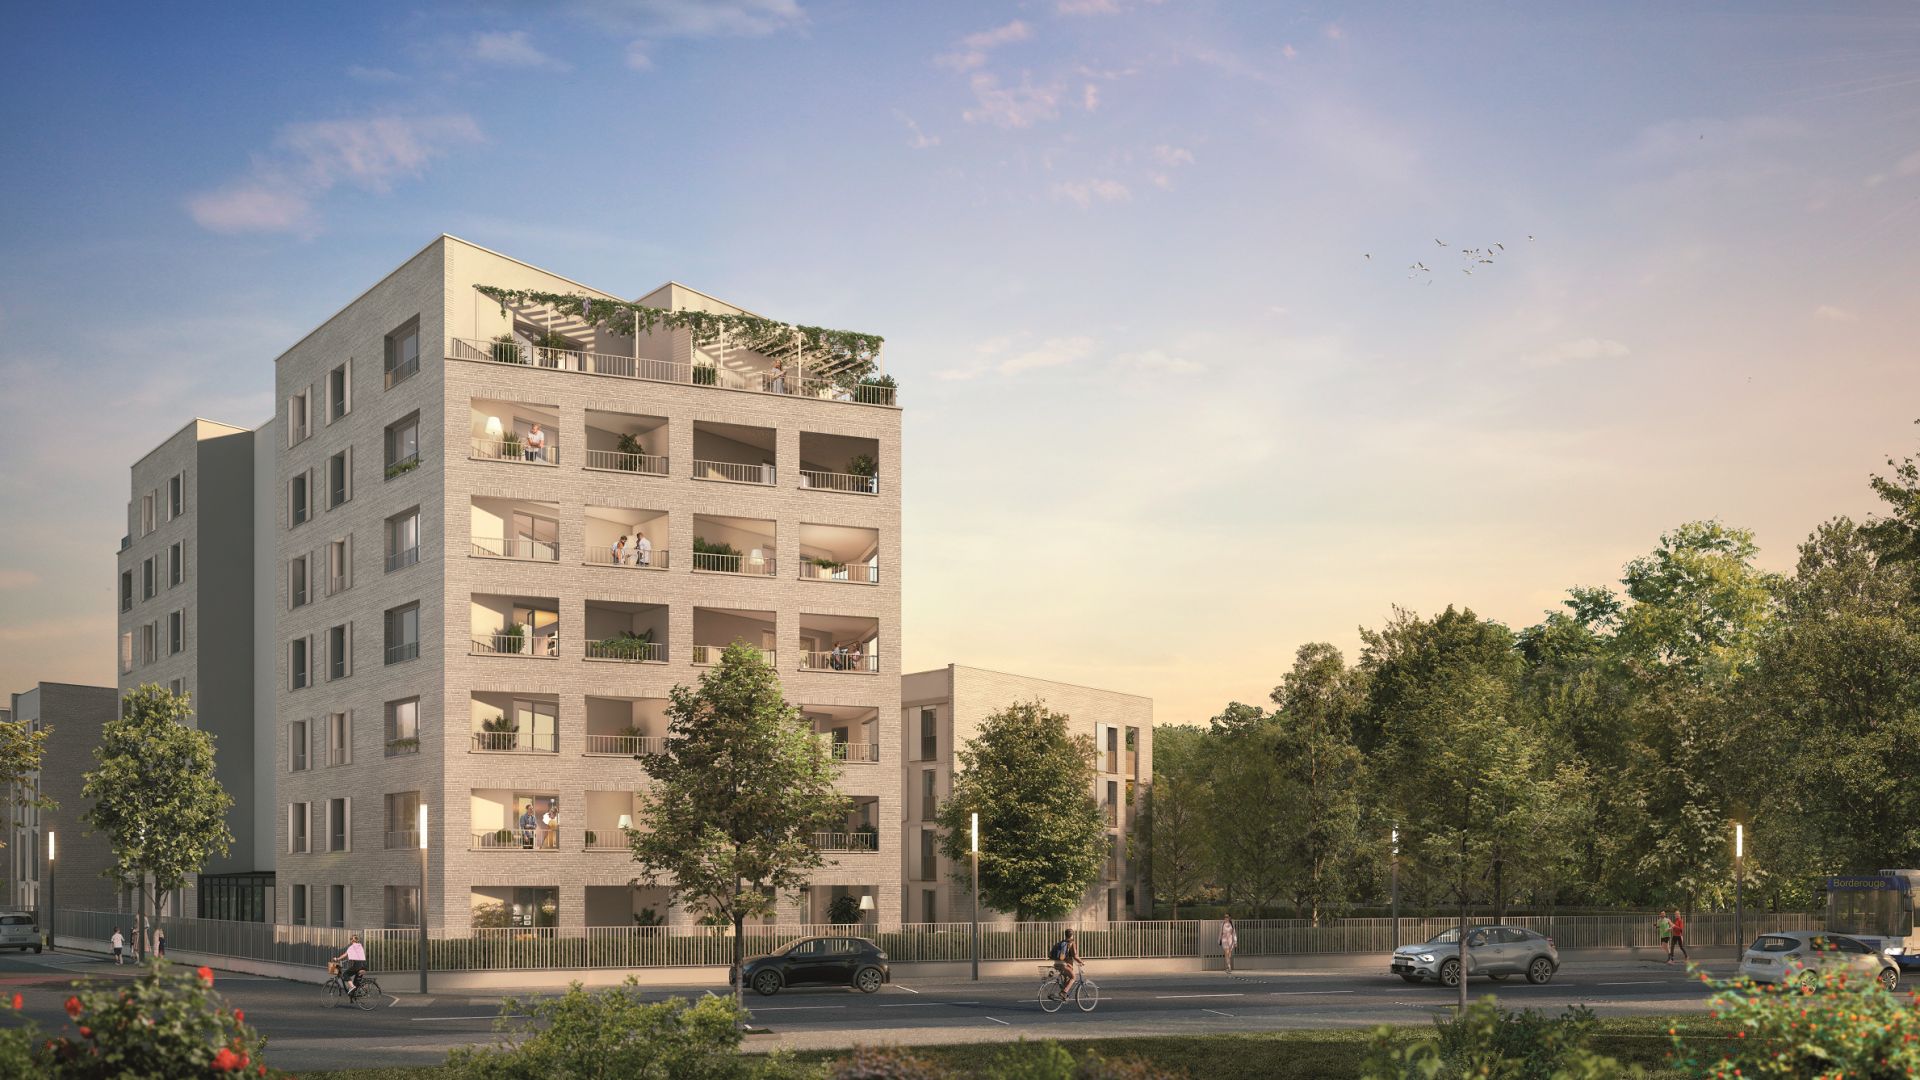 Greencity immobilier - achat appartements et villas neuves du T2 au T5 - Résidence Le Cybèle - 31400 Toulouse Rangueil